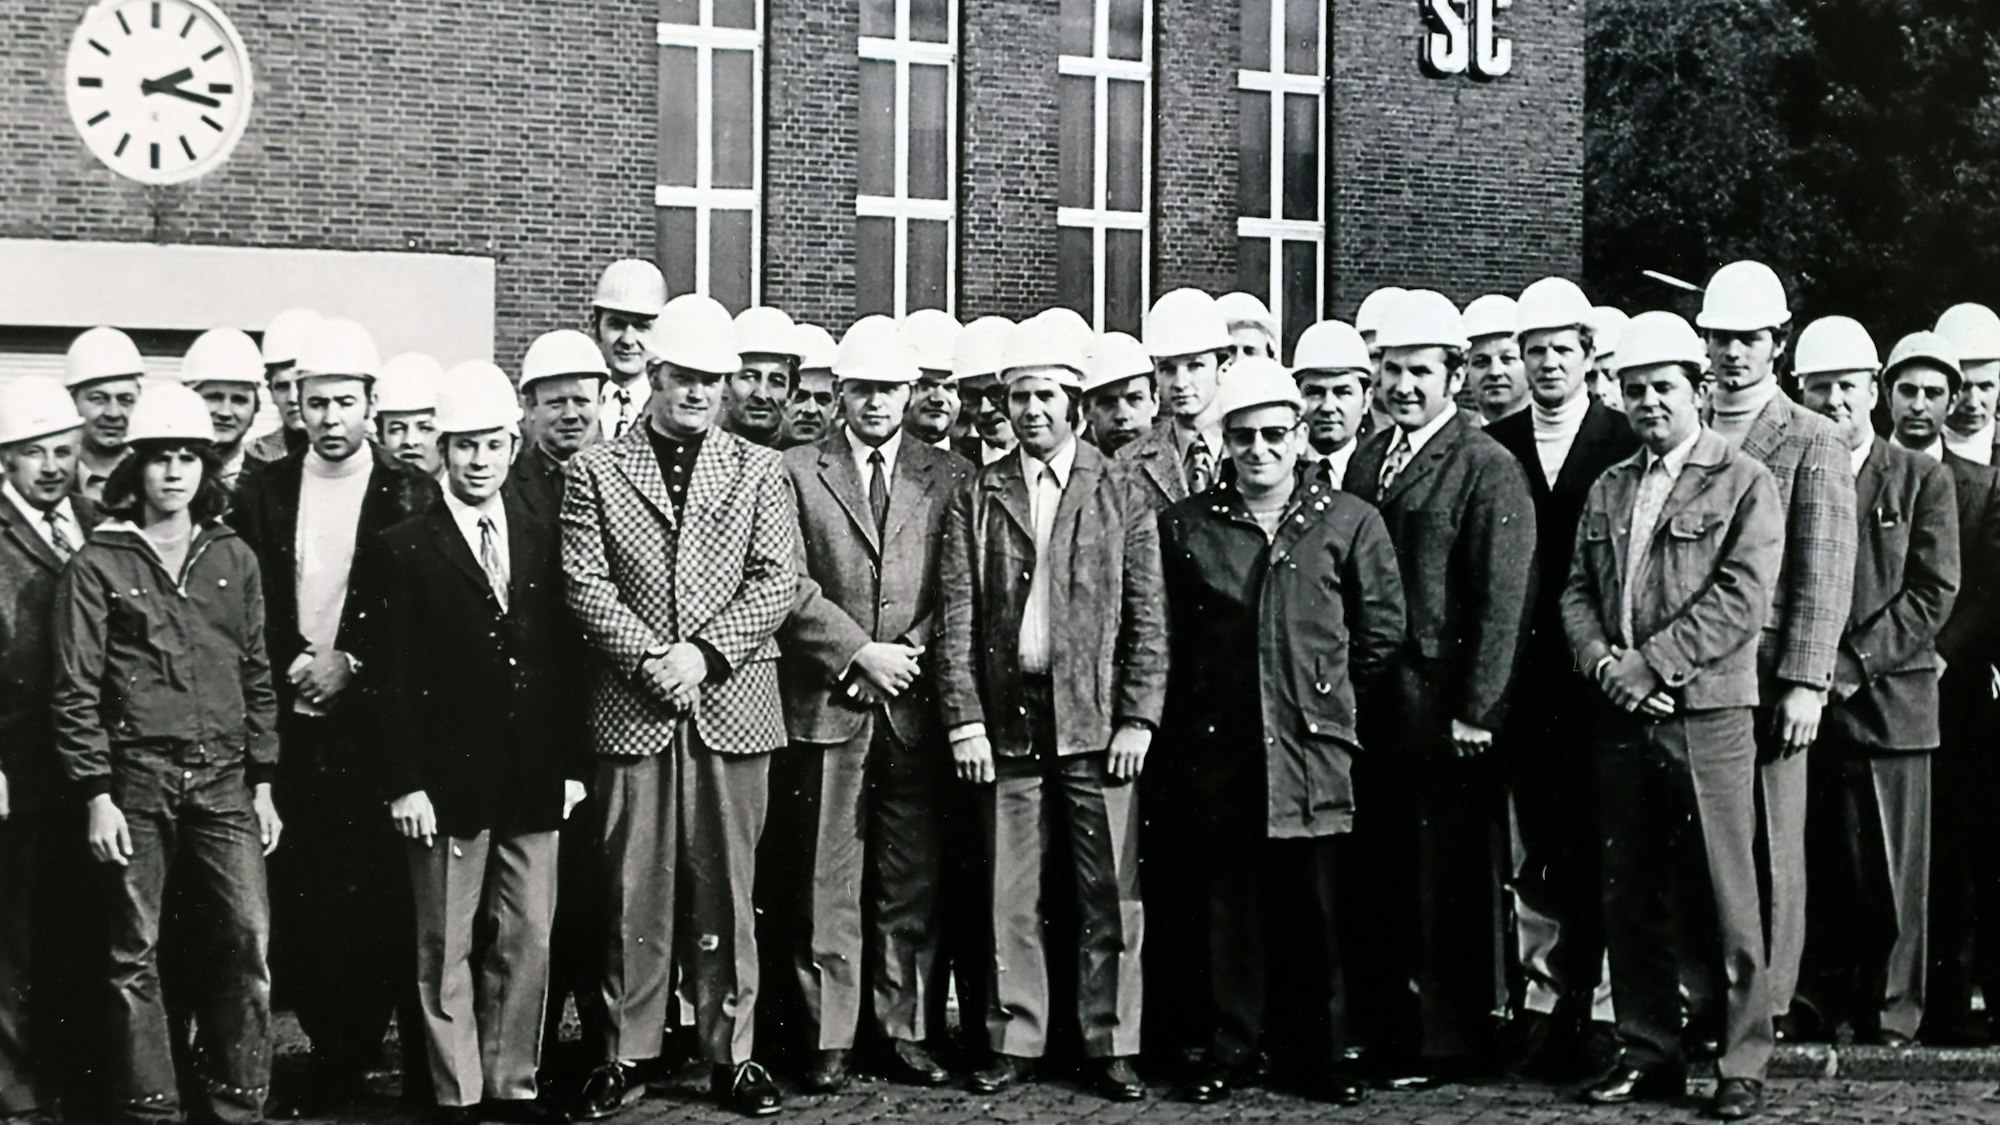 Zu sehen ist ein historisches Foto einer Männergruppe.